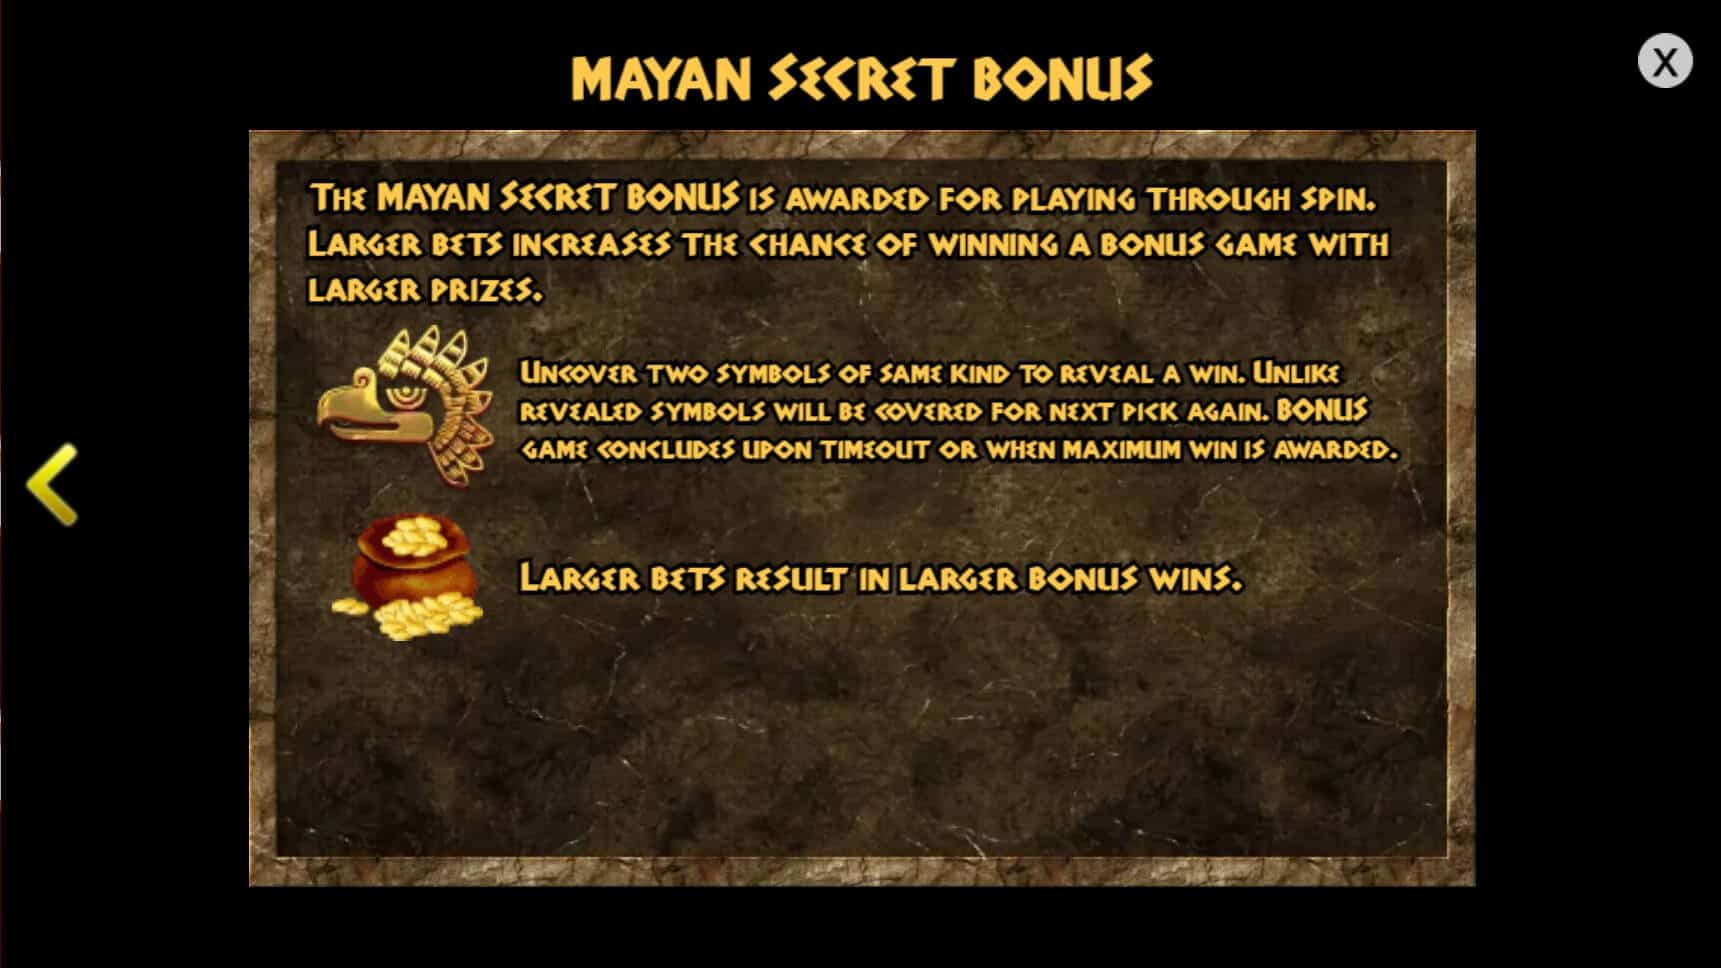 Mayan Gold สล็อต เว็บตรง ไม่ผ่านเอเย่นต์ ค่าย KA Gaming สล็อต 1234 joker